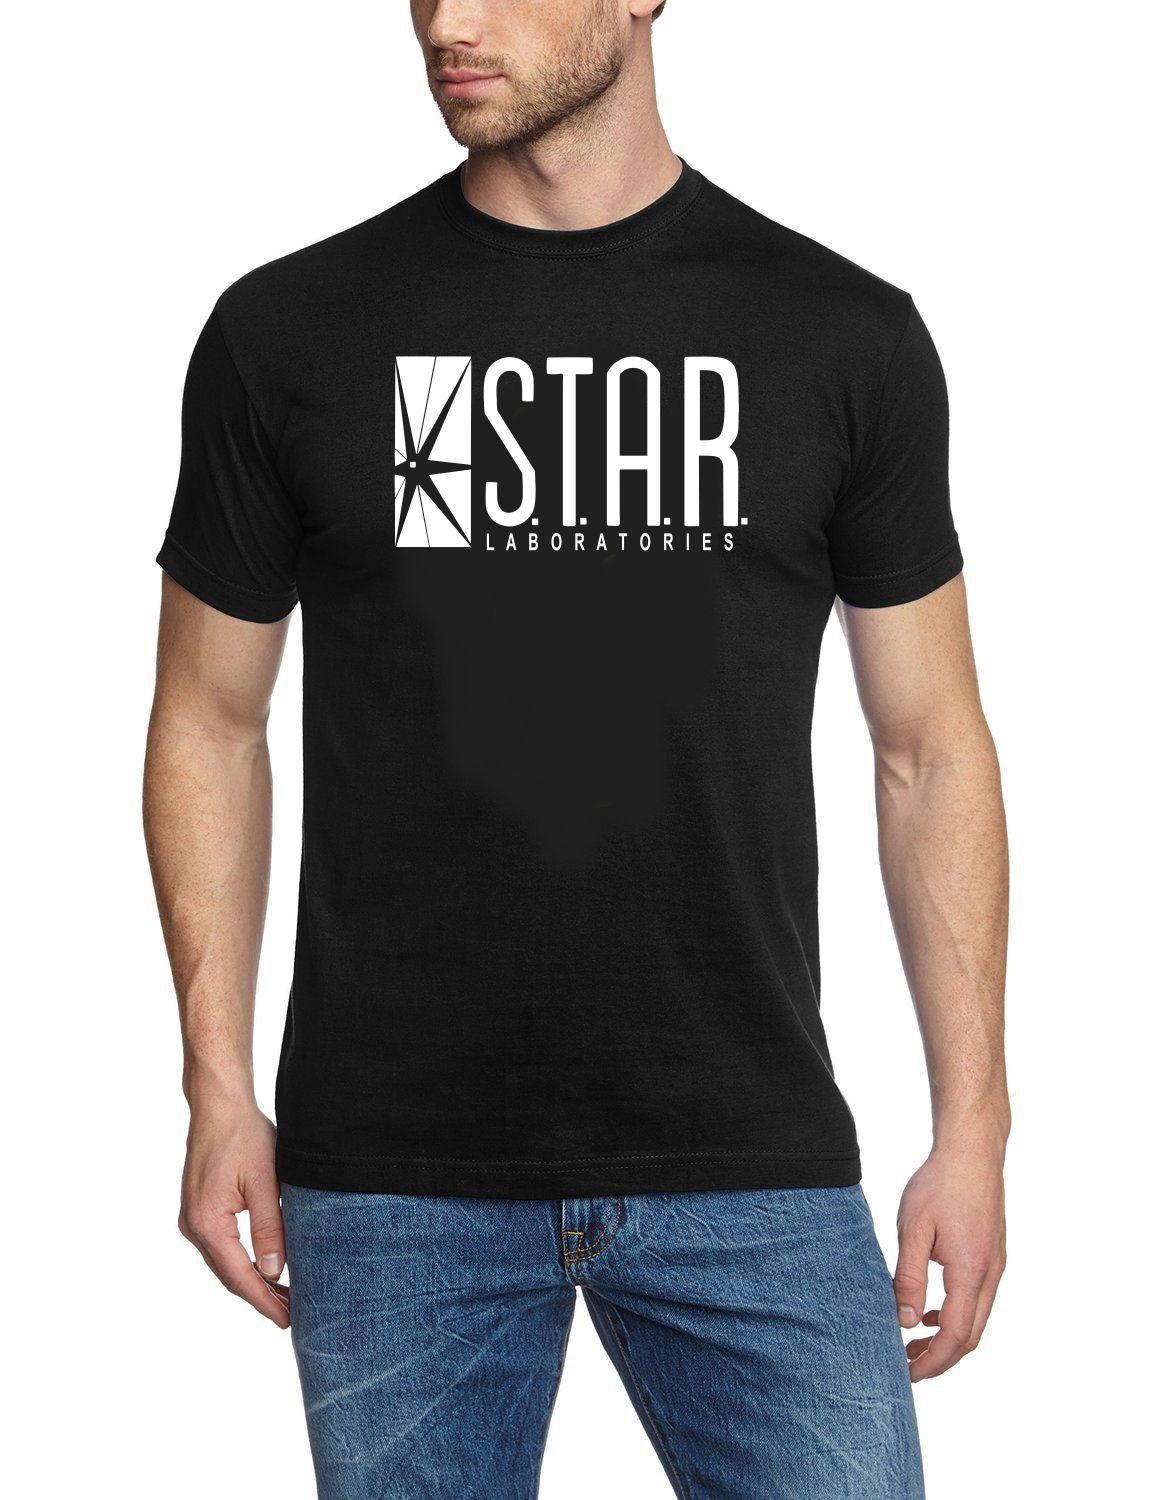 Flash Print-Shirt STAR LABORATORIES The Flash TV T-Shirt Schwarz Erwachsene + Jugendliche Gr. S M L XL XXL